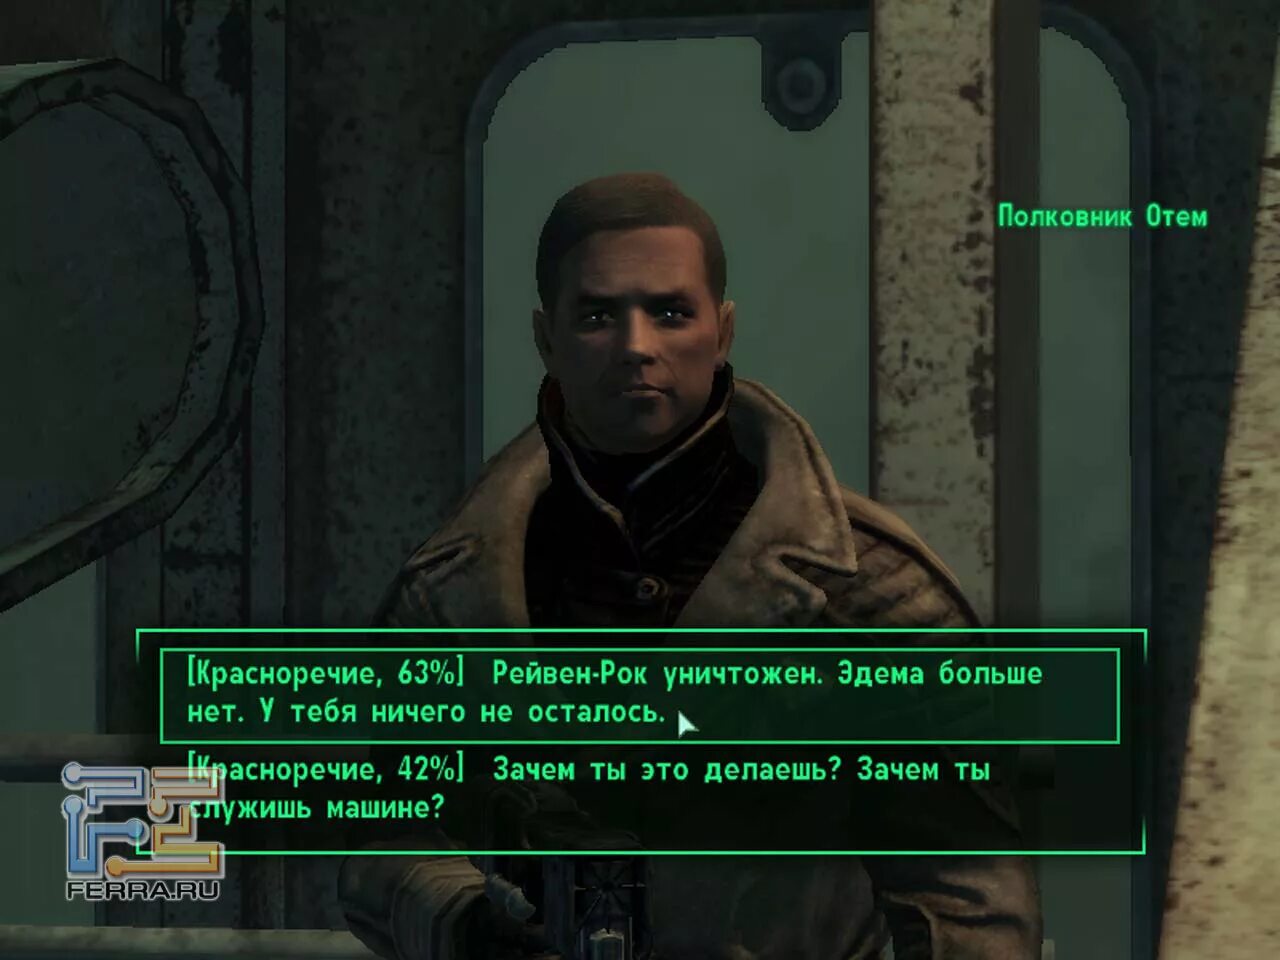 Полковник Отем Fallout 3. Fallout диалог красноречие. Fallout 3 красноречие. Диалоги фоллаут 3 красноречие. Fallout как поменять язык на русский